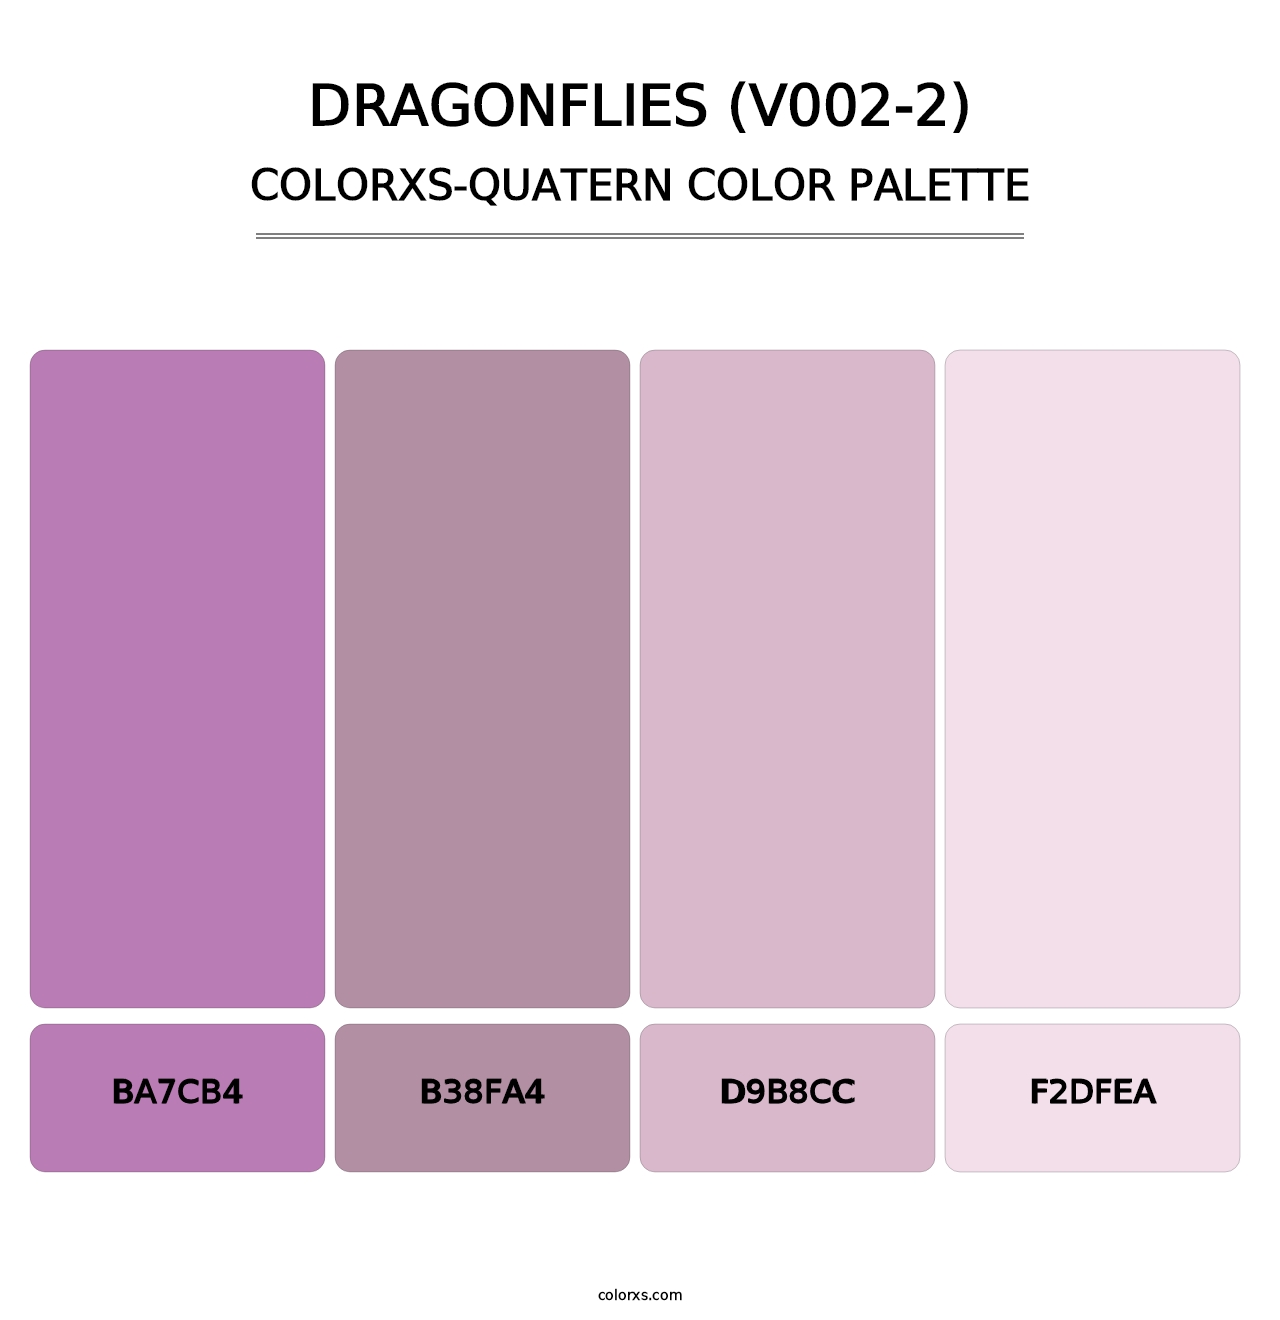 Dragonflies (V002-2) - Colorxs Quatern Palette